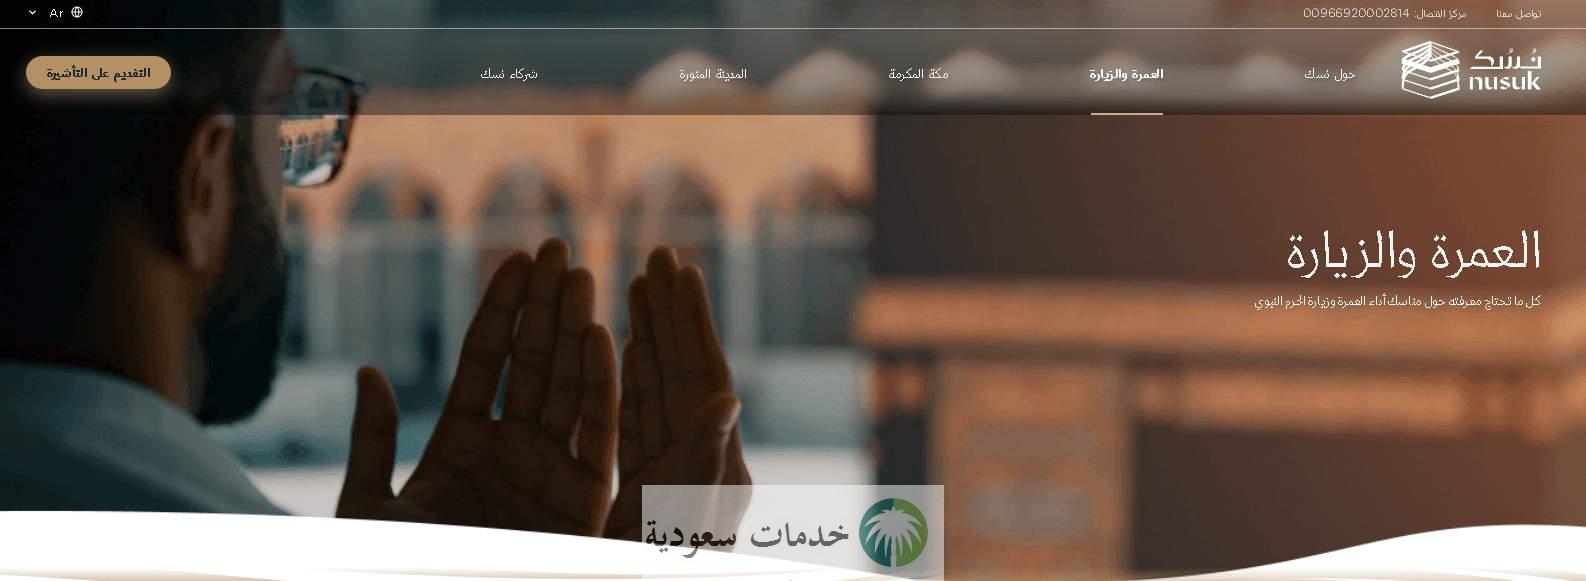 مفاجأة وزير الحج السعودي للمصريين عمرة 4400 عبر رابط منصة نسك